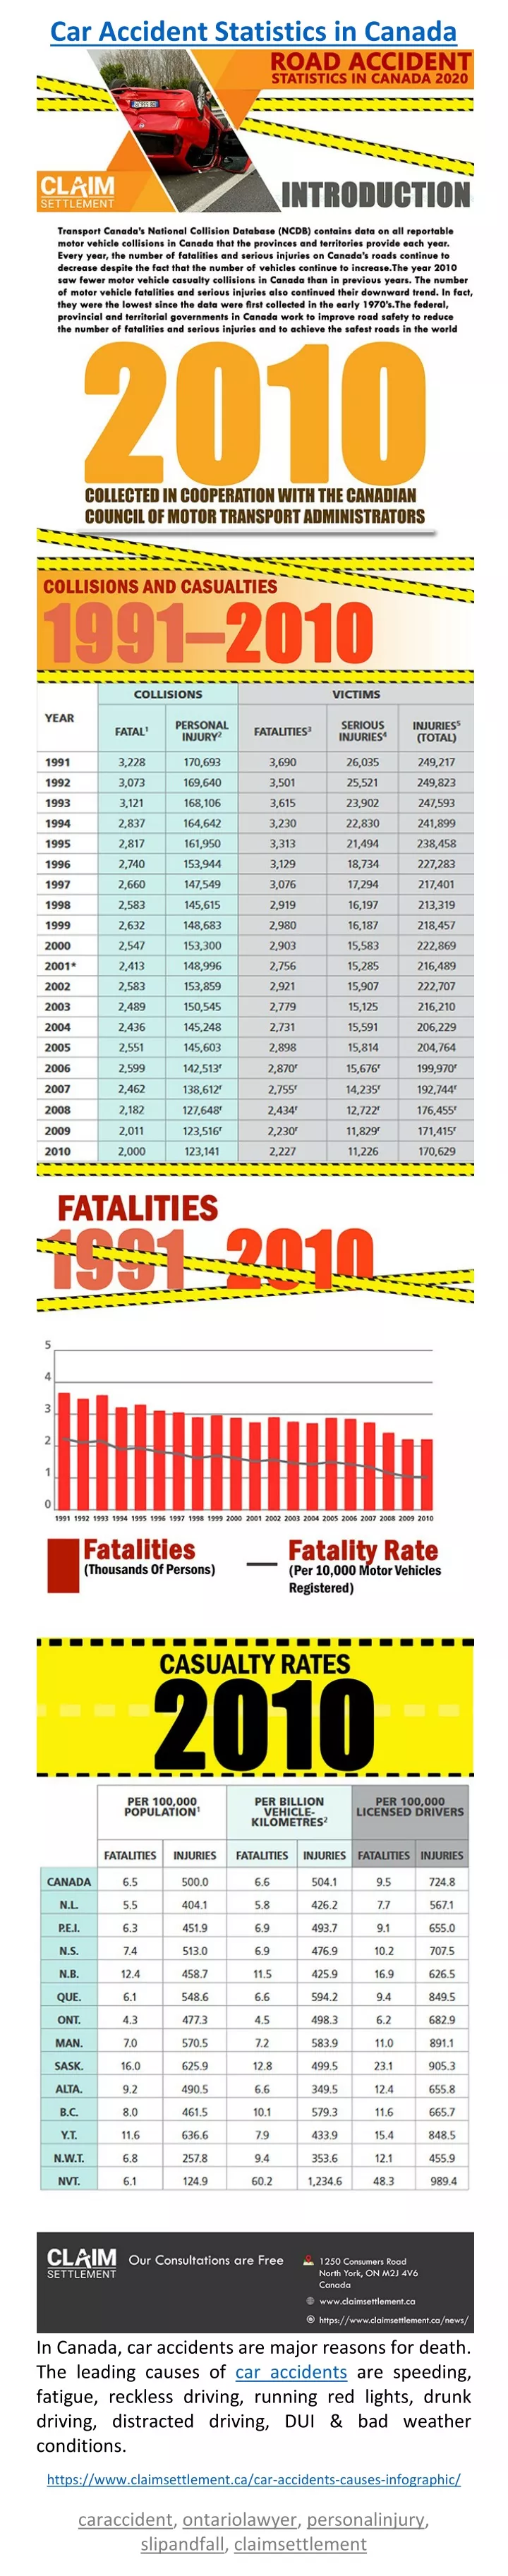 car accident statistics in canada